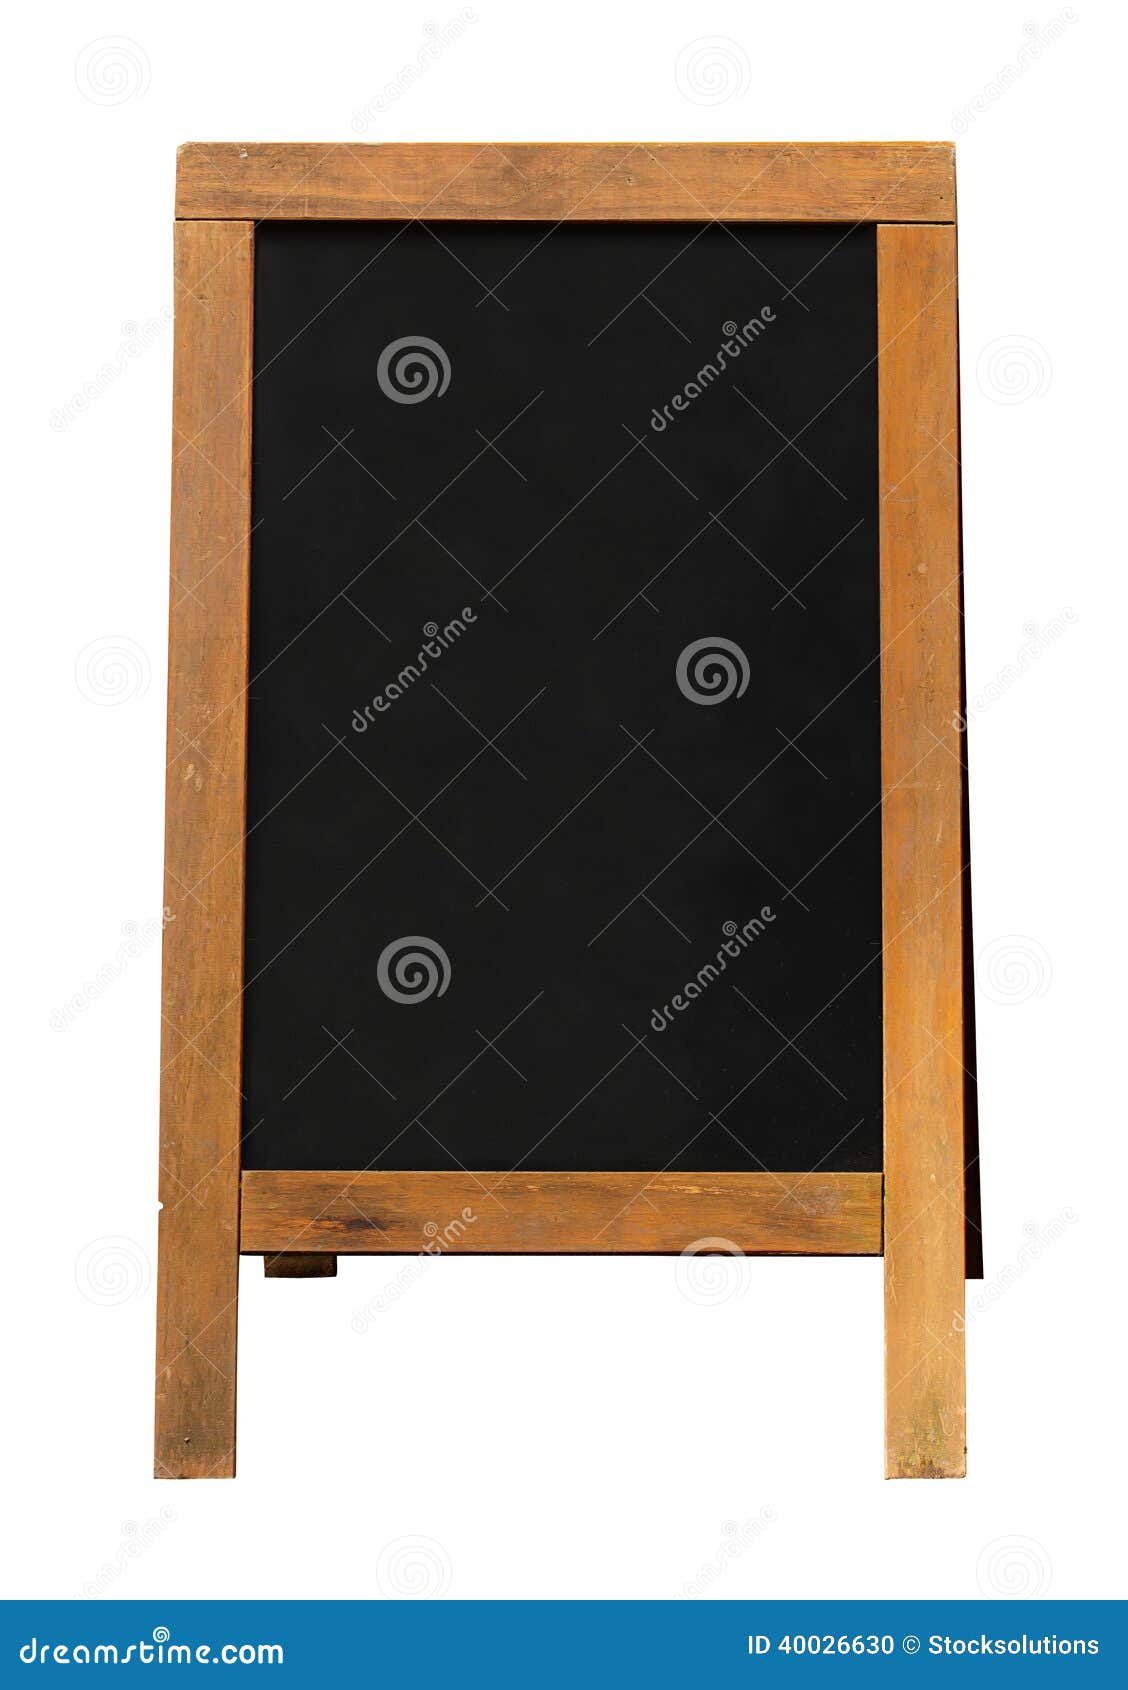 wooden blackboard sandwich board mounted frame signboard also known as chalkboard area blank insertion your 40026630